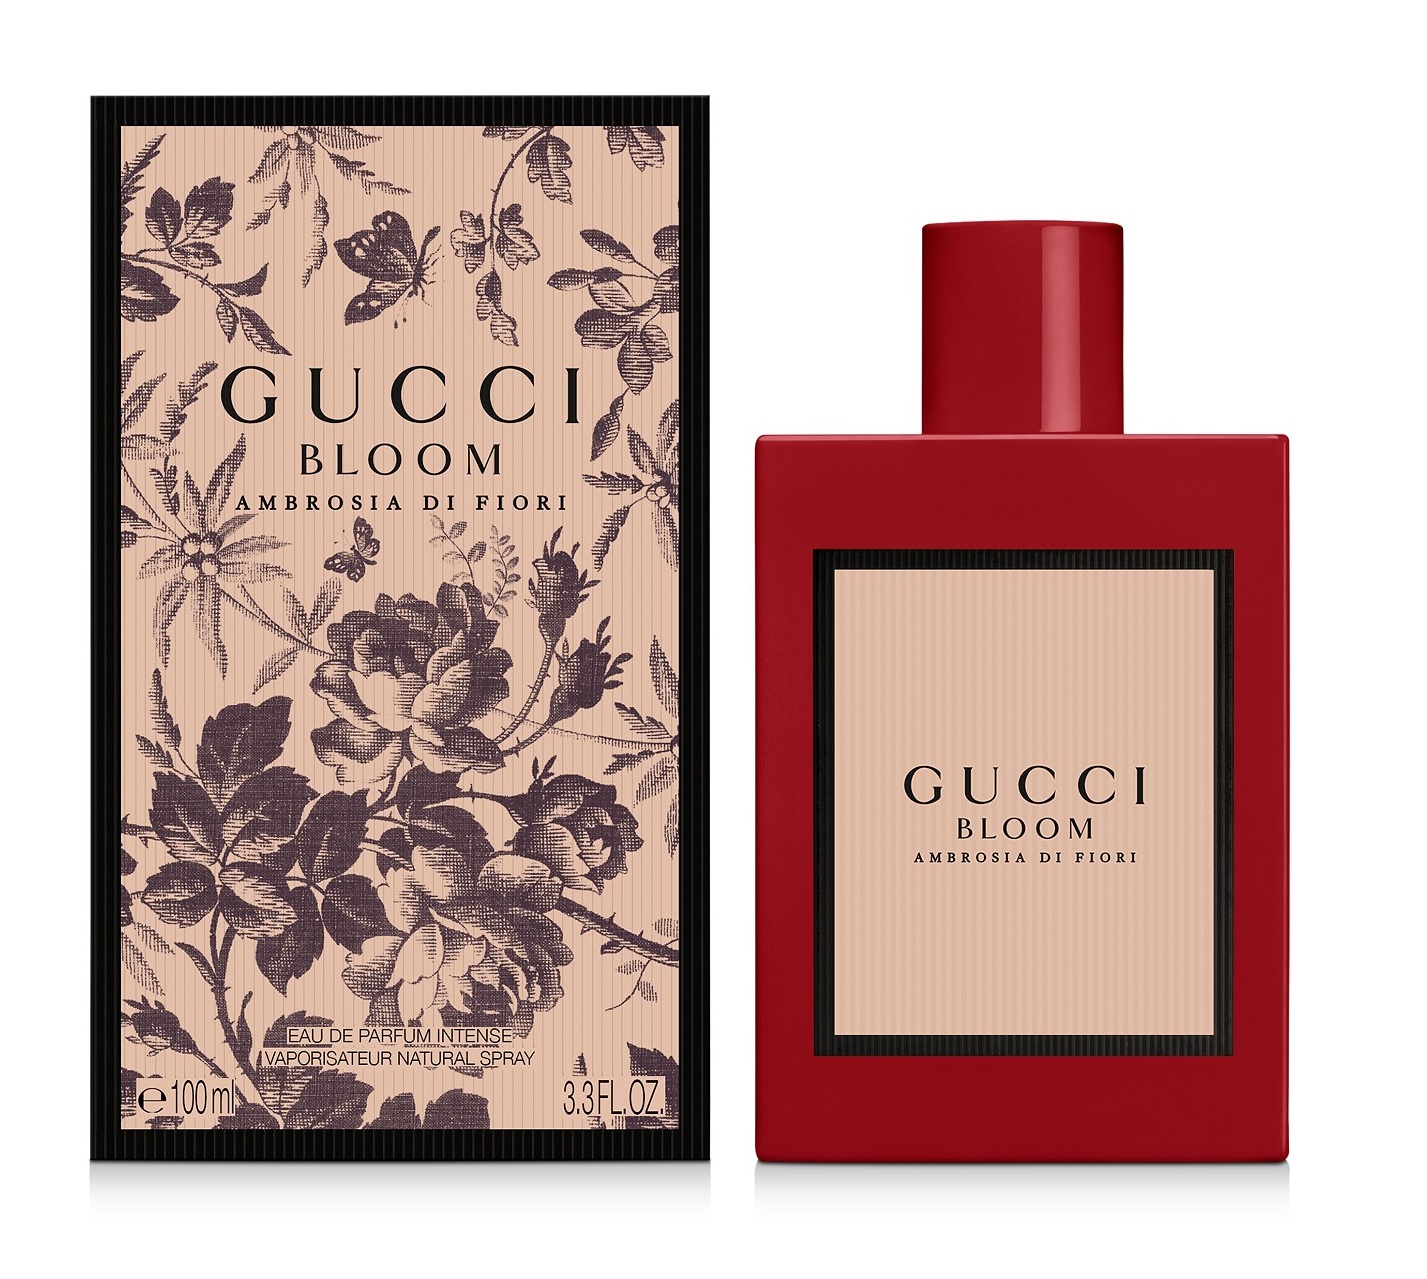 Gucci Bloom Ambrosia di Fiori Gucci Parfum - ein neues Parfum für